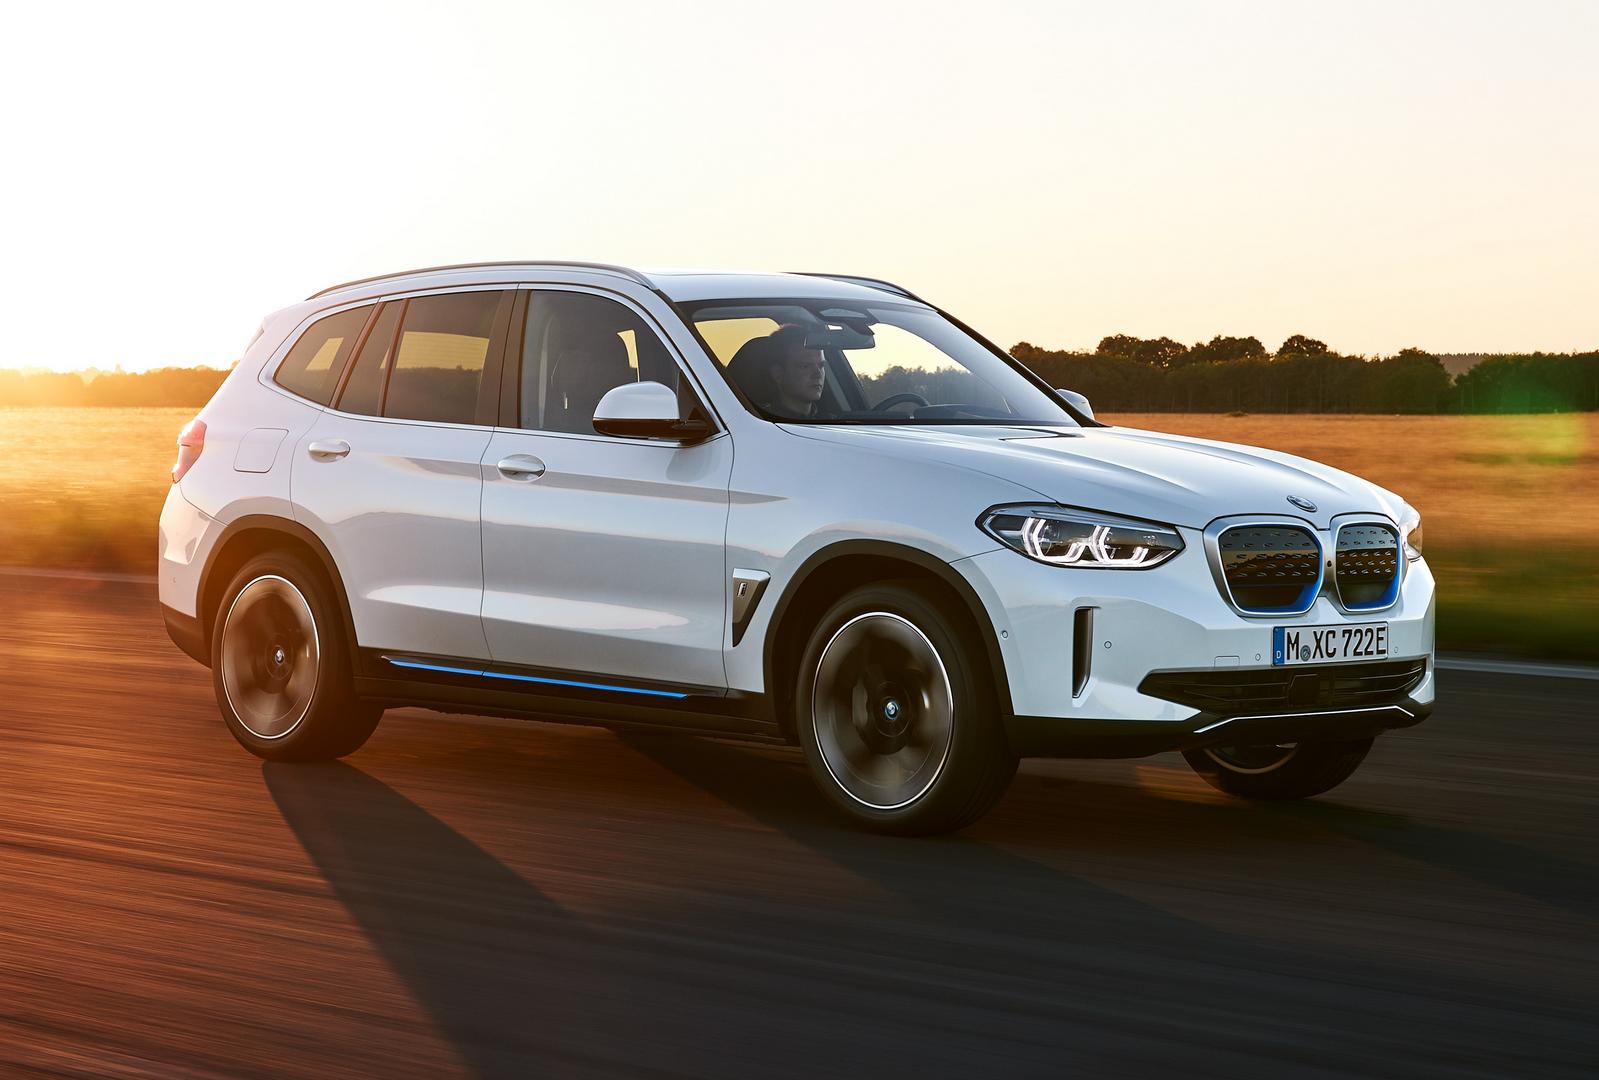 BMW iX3 выигрывает от прогресса в основных электрических системах BMW. Его мощность увеличивается на 30 процентов по сравнению с существующими полностью электрическими транспортными средствами BMW Group. Рабочий диапазон, вес, требования к месту уста